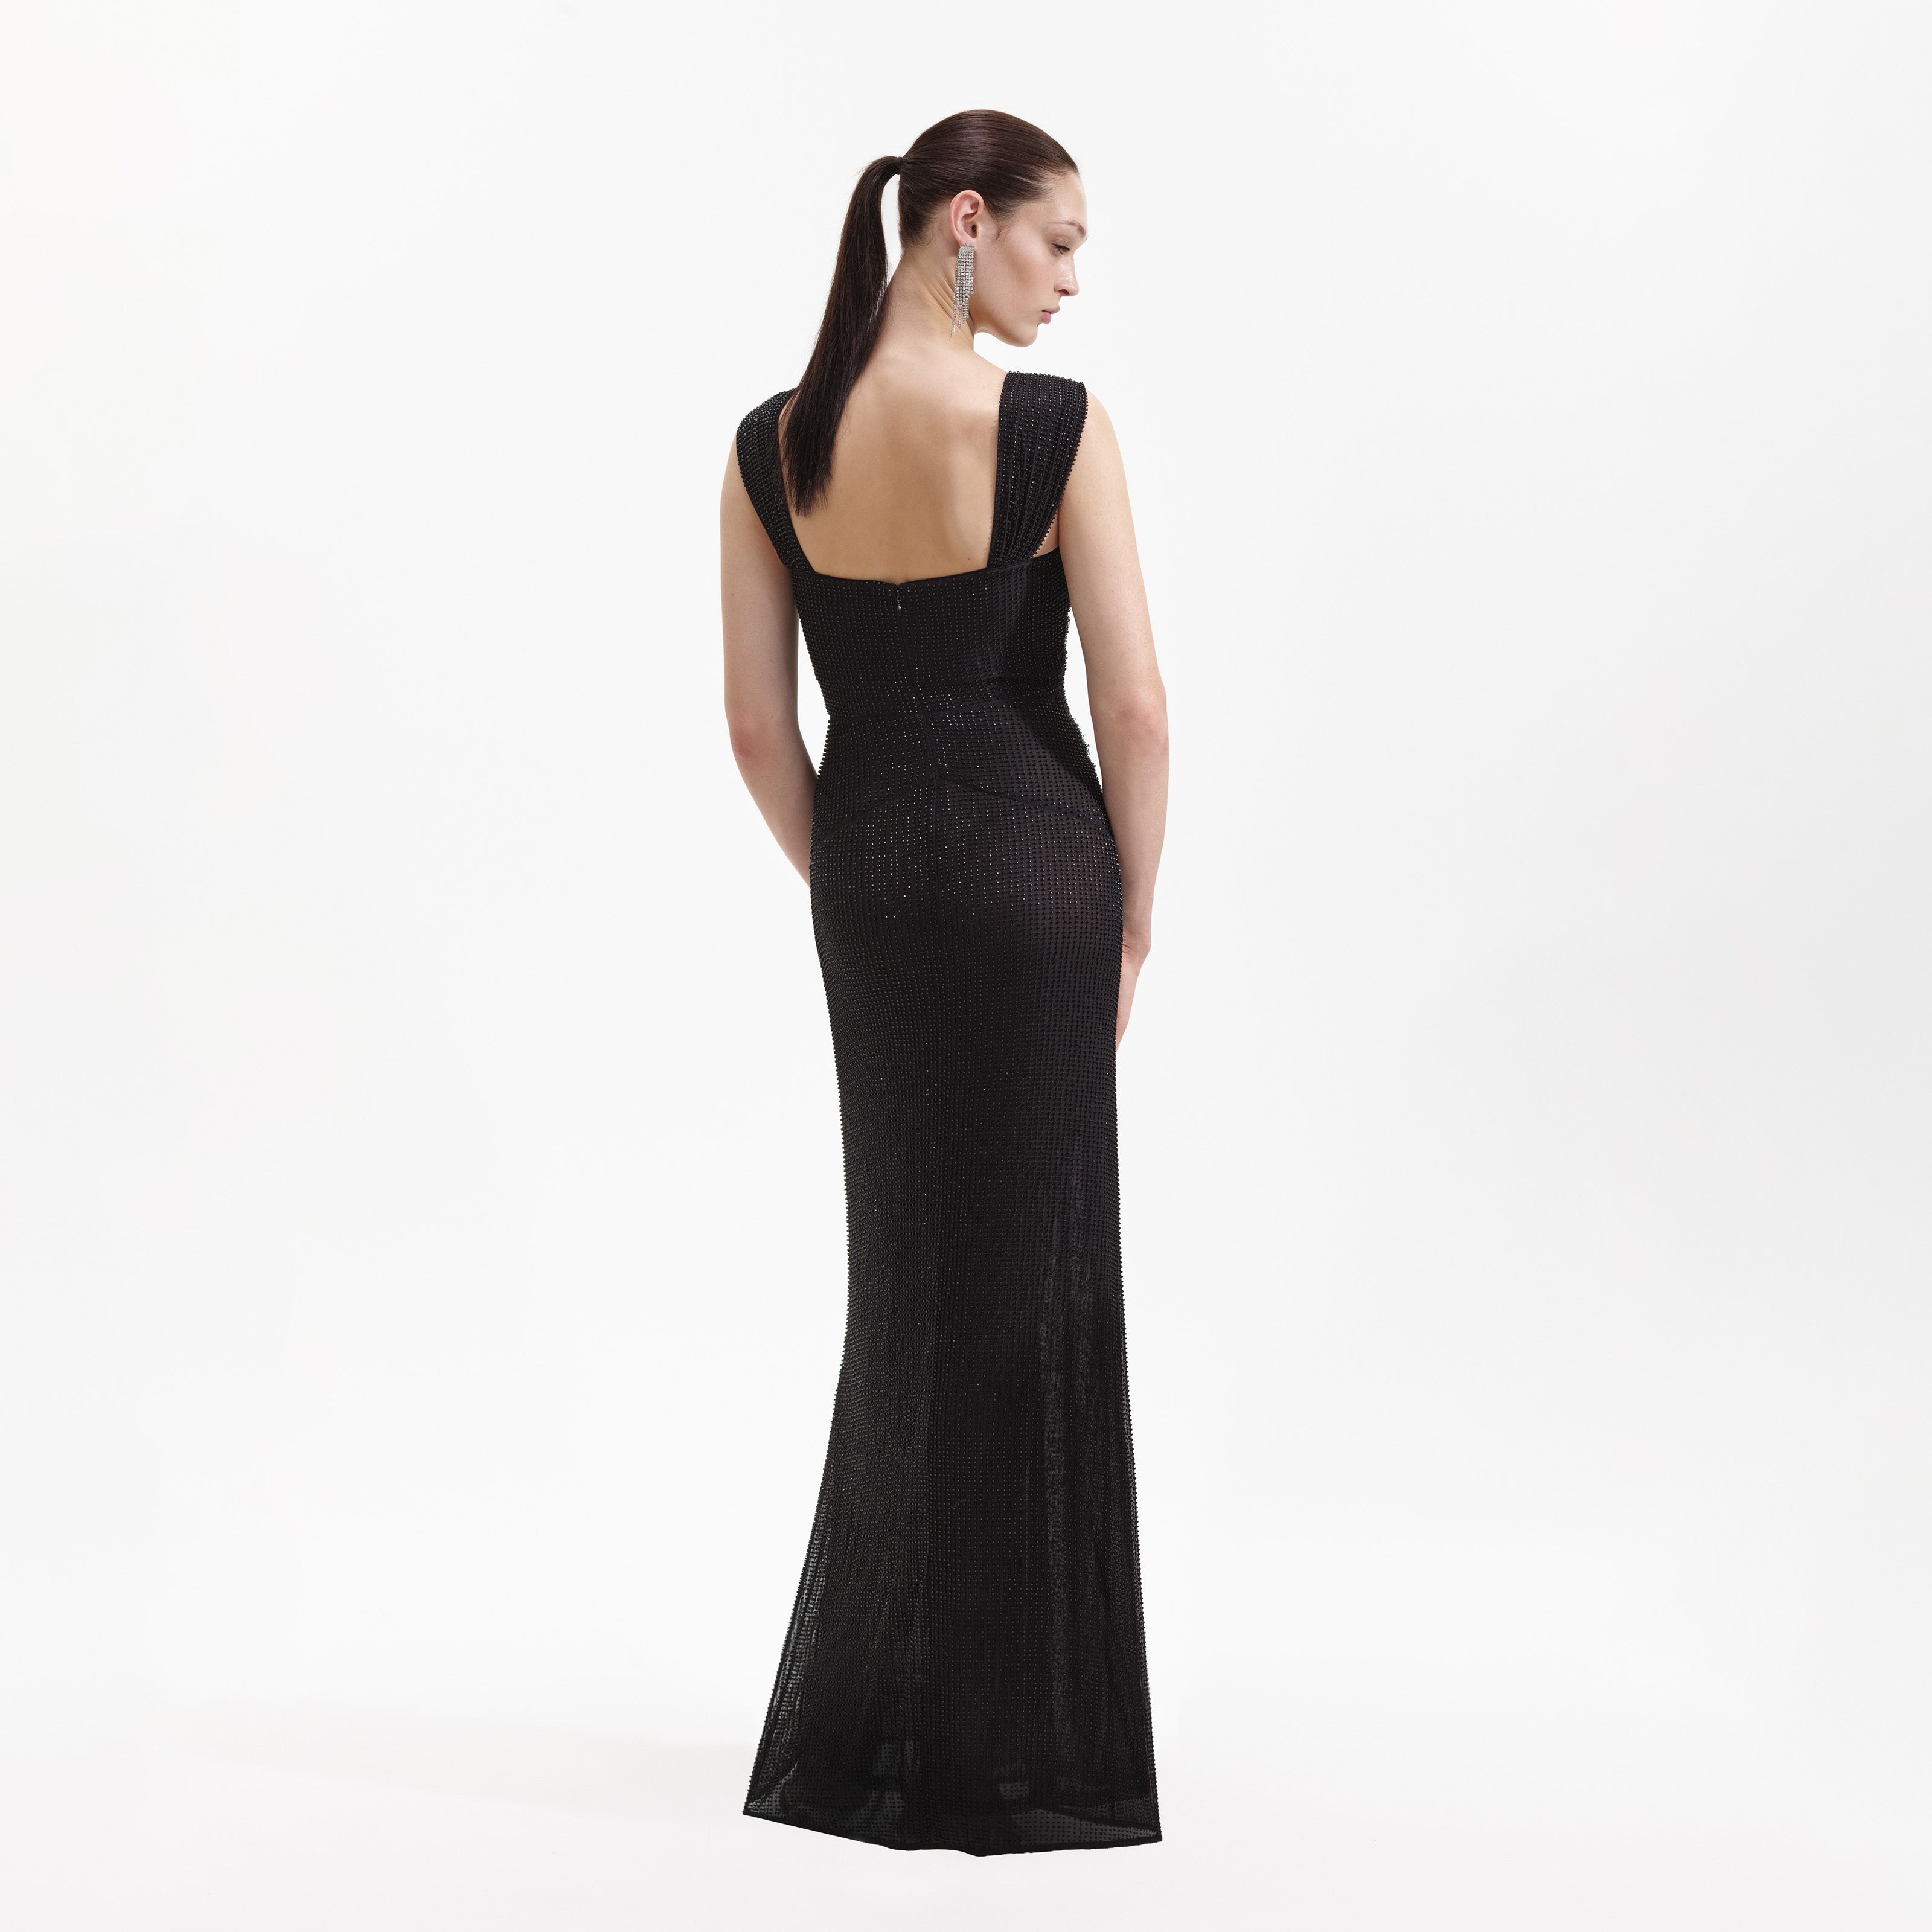 JS Boutique House of Fraser Dress UK 10 black and sequin Evening one  shoulder | eBay